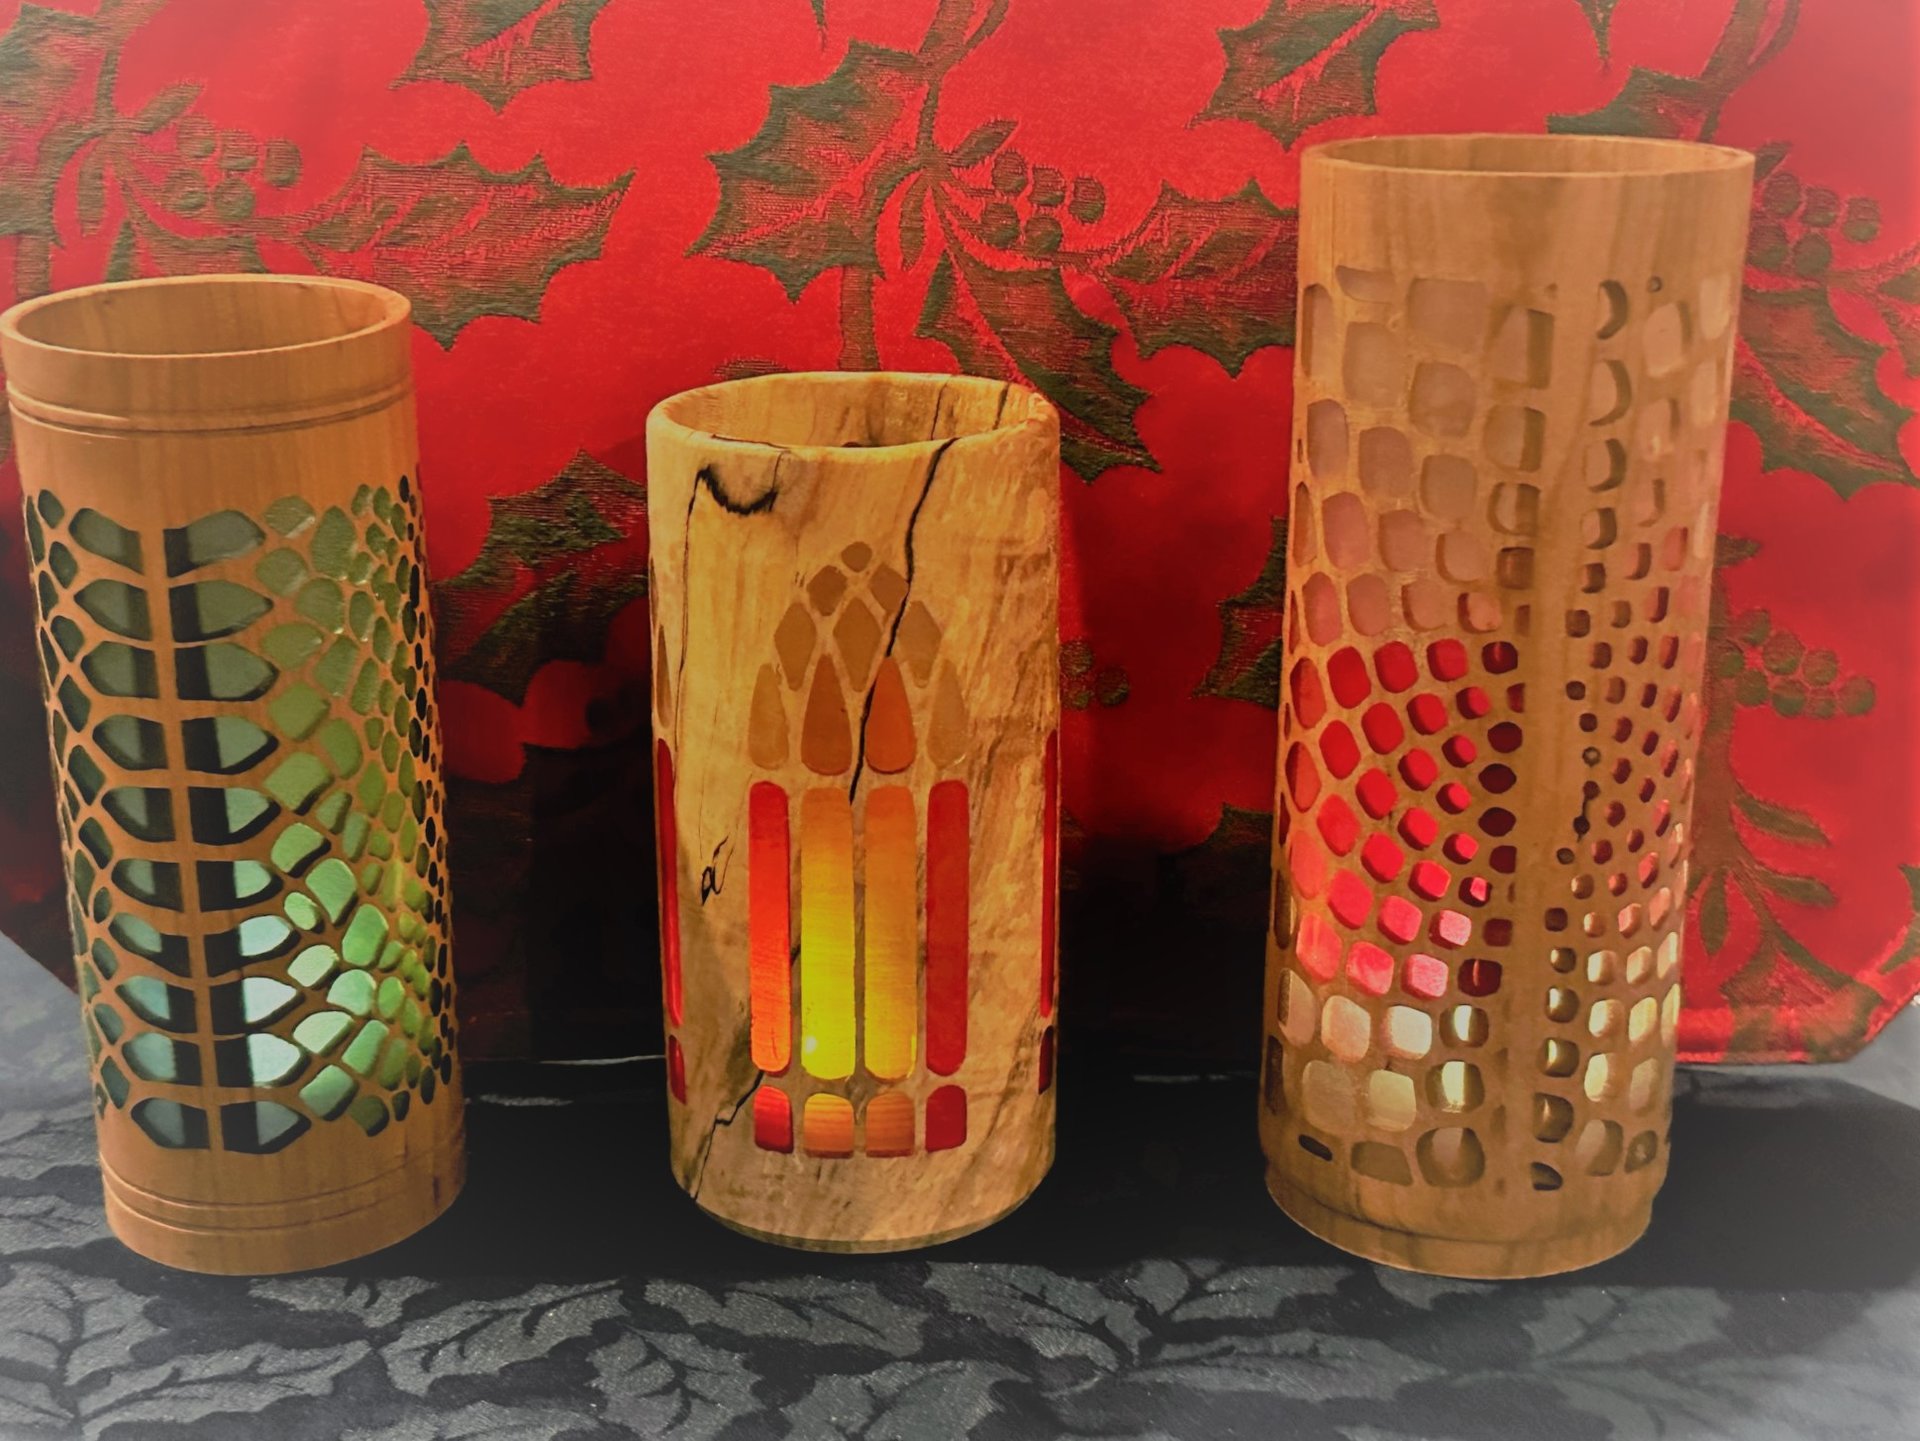 Three vases with translucent epoxy inlays.